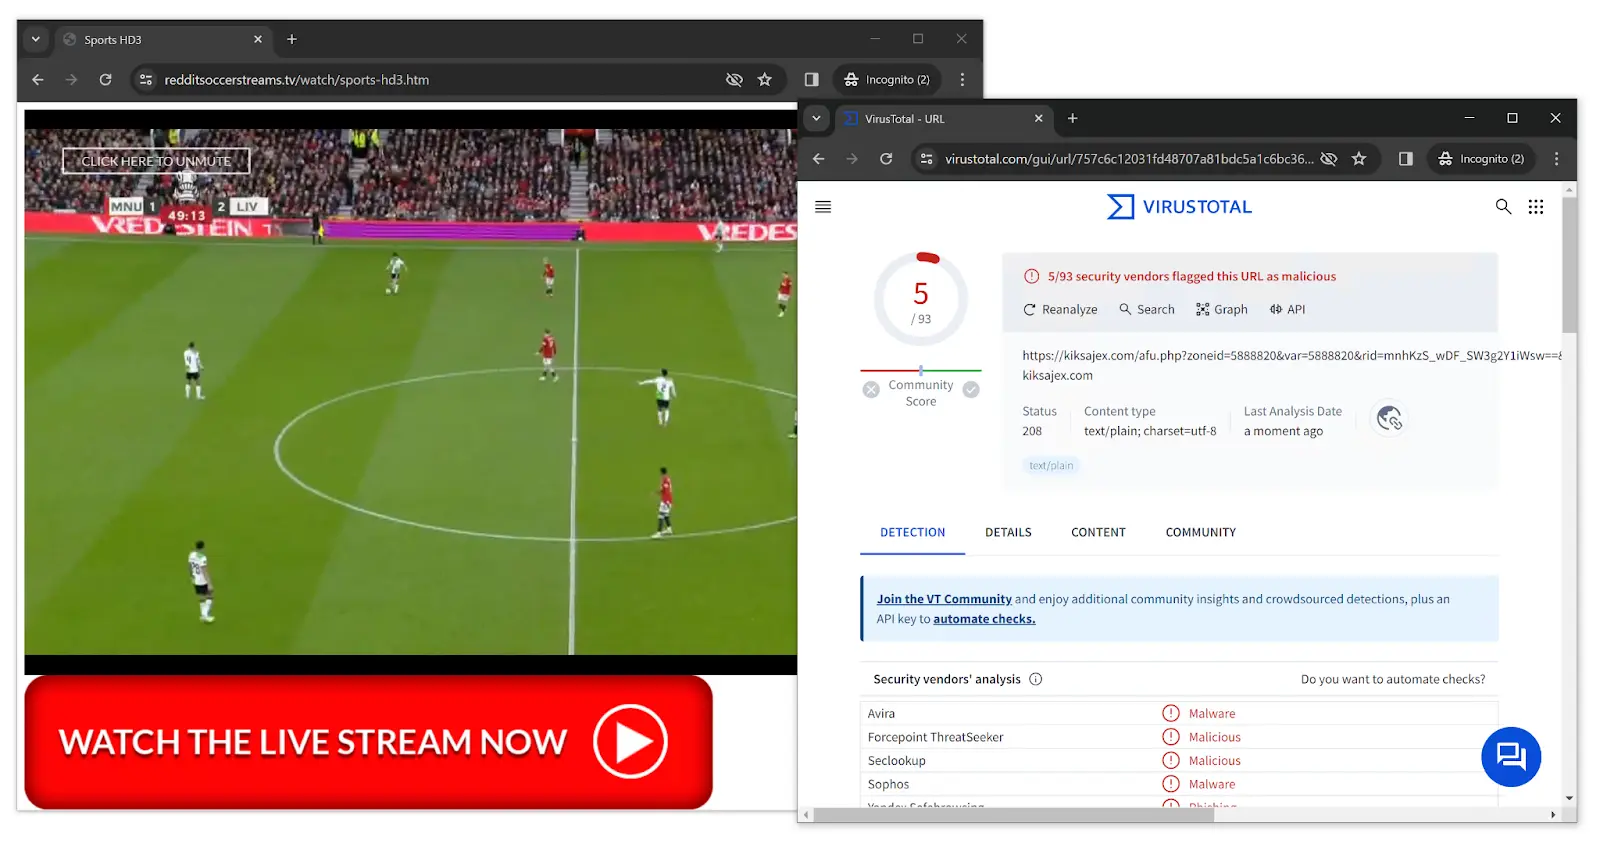 Un streaming en direct de Reddit Soccer Streams accompagné d'un rapport VirusTotal signalant une URL comme malveillante.